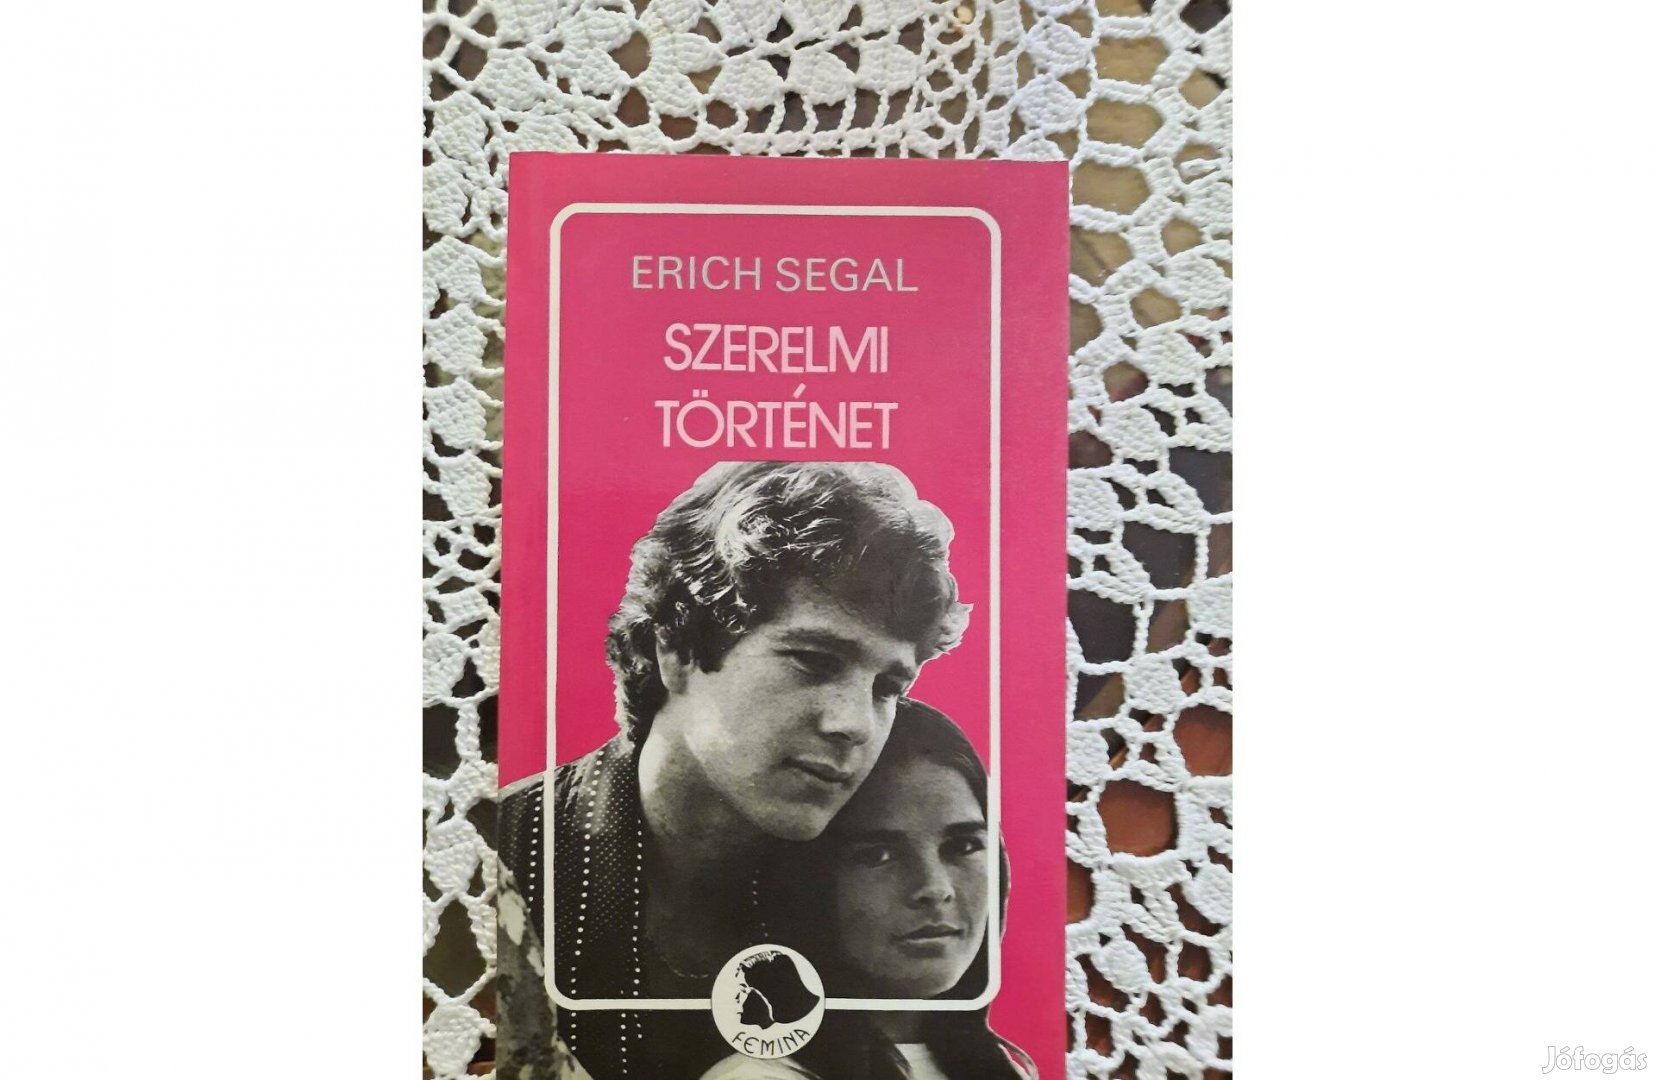 Erich Segal Szerelmi történet c. könyv eladó